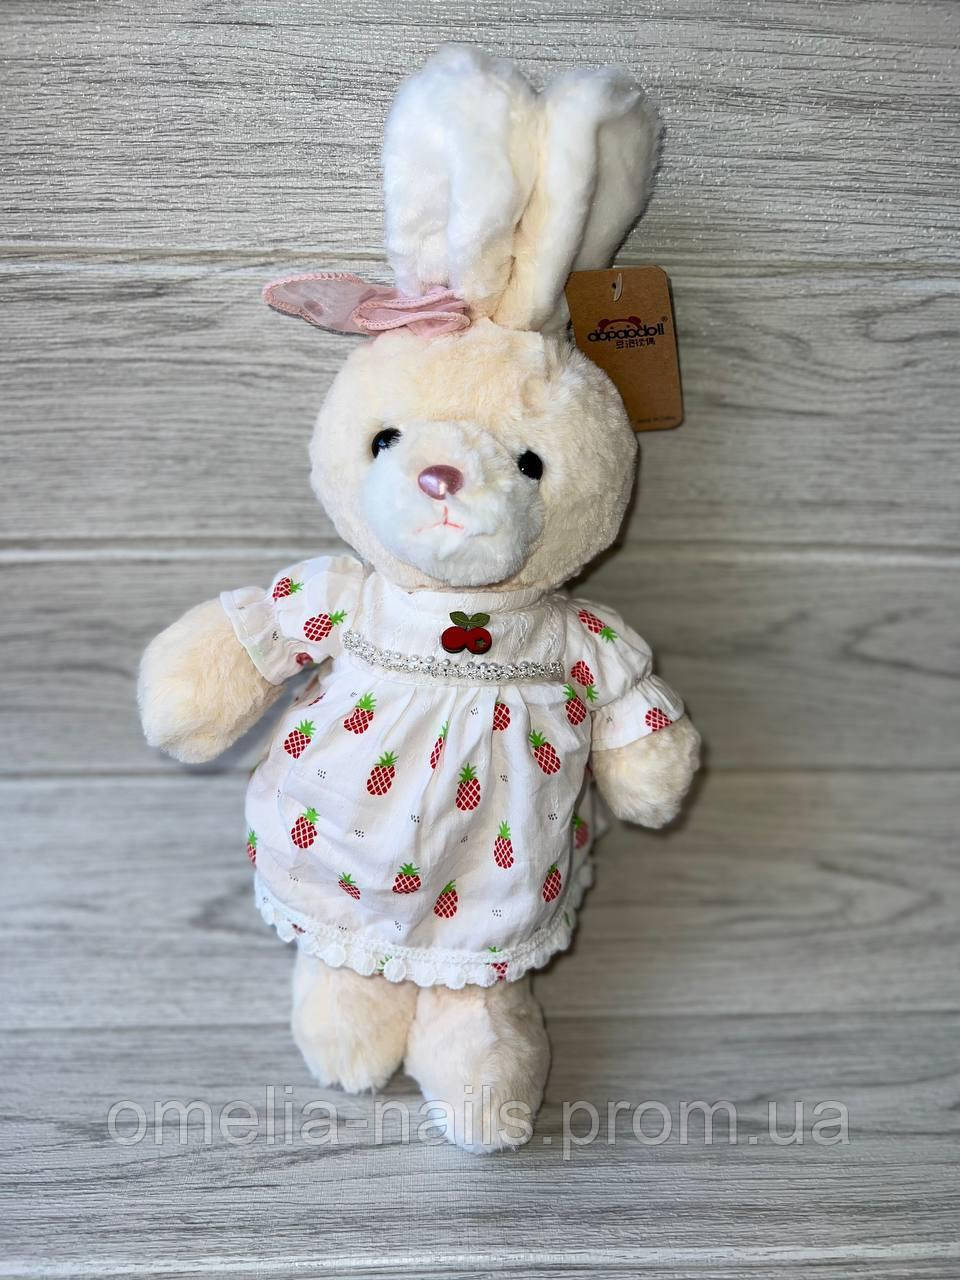 М'яка іграшка заєць, іграшка для дитини, м'який зайчик, Заєць великий у сукні 65см. (B1012-13)